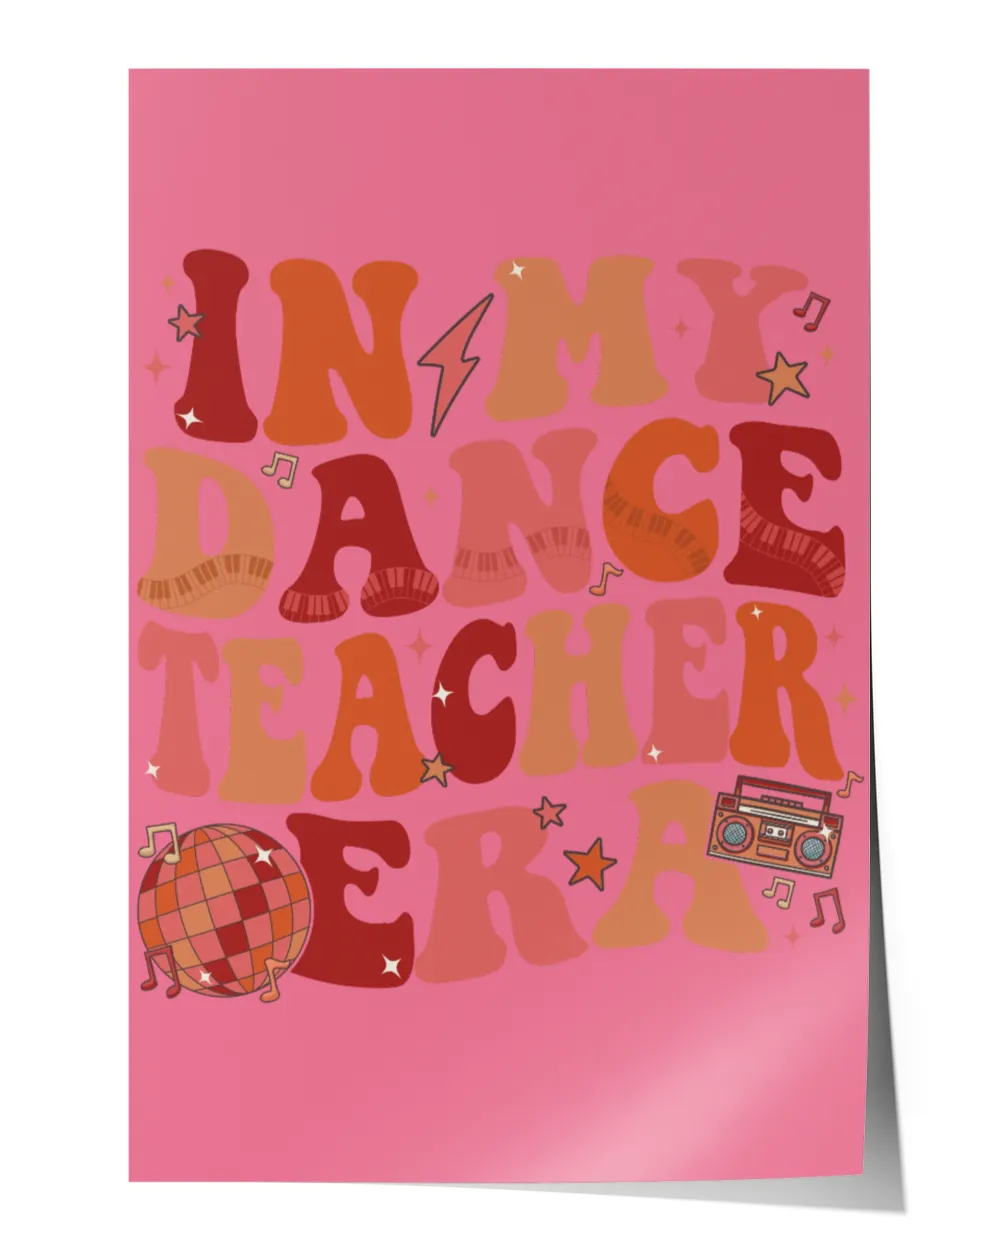 In My Dance Era Shirt, Dancer Team Shirt, Dance Teacher Shirt, Dance Instructor Gift, Dancing Master Shirt, Dancer Shirt For Mom